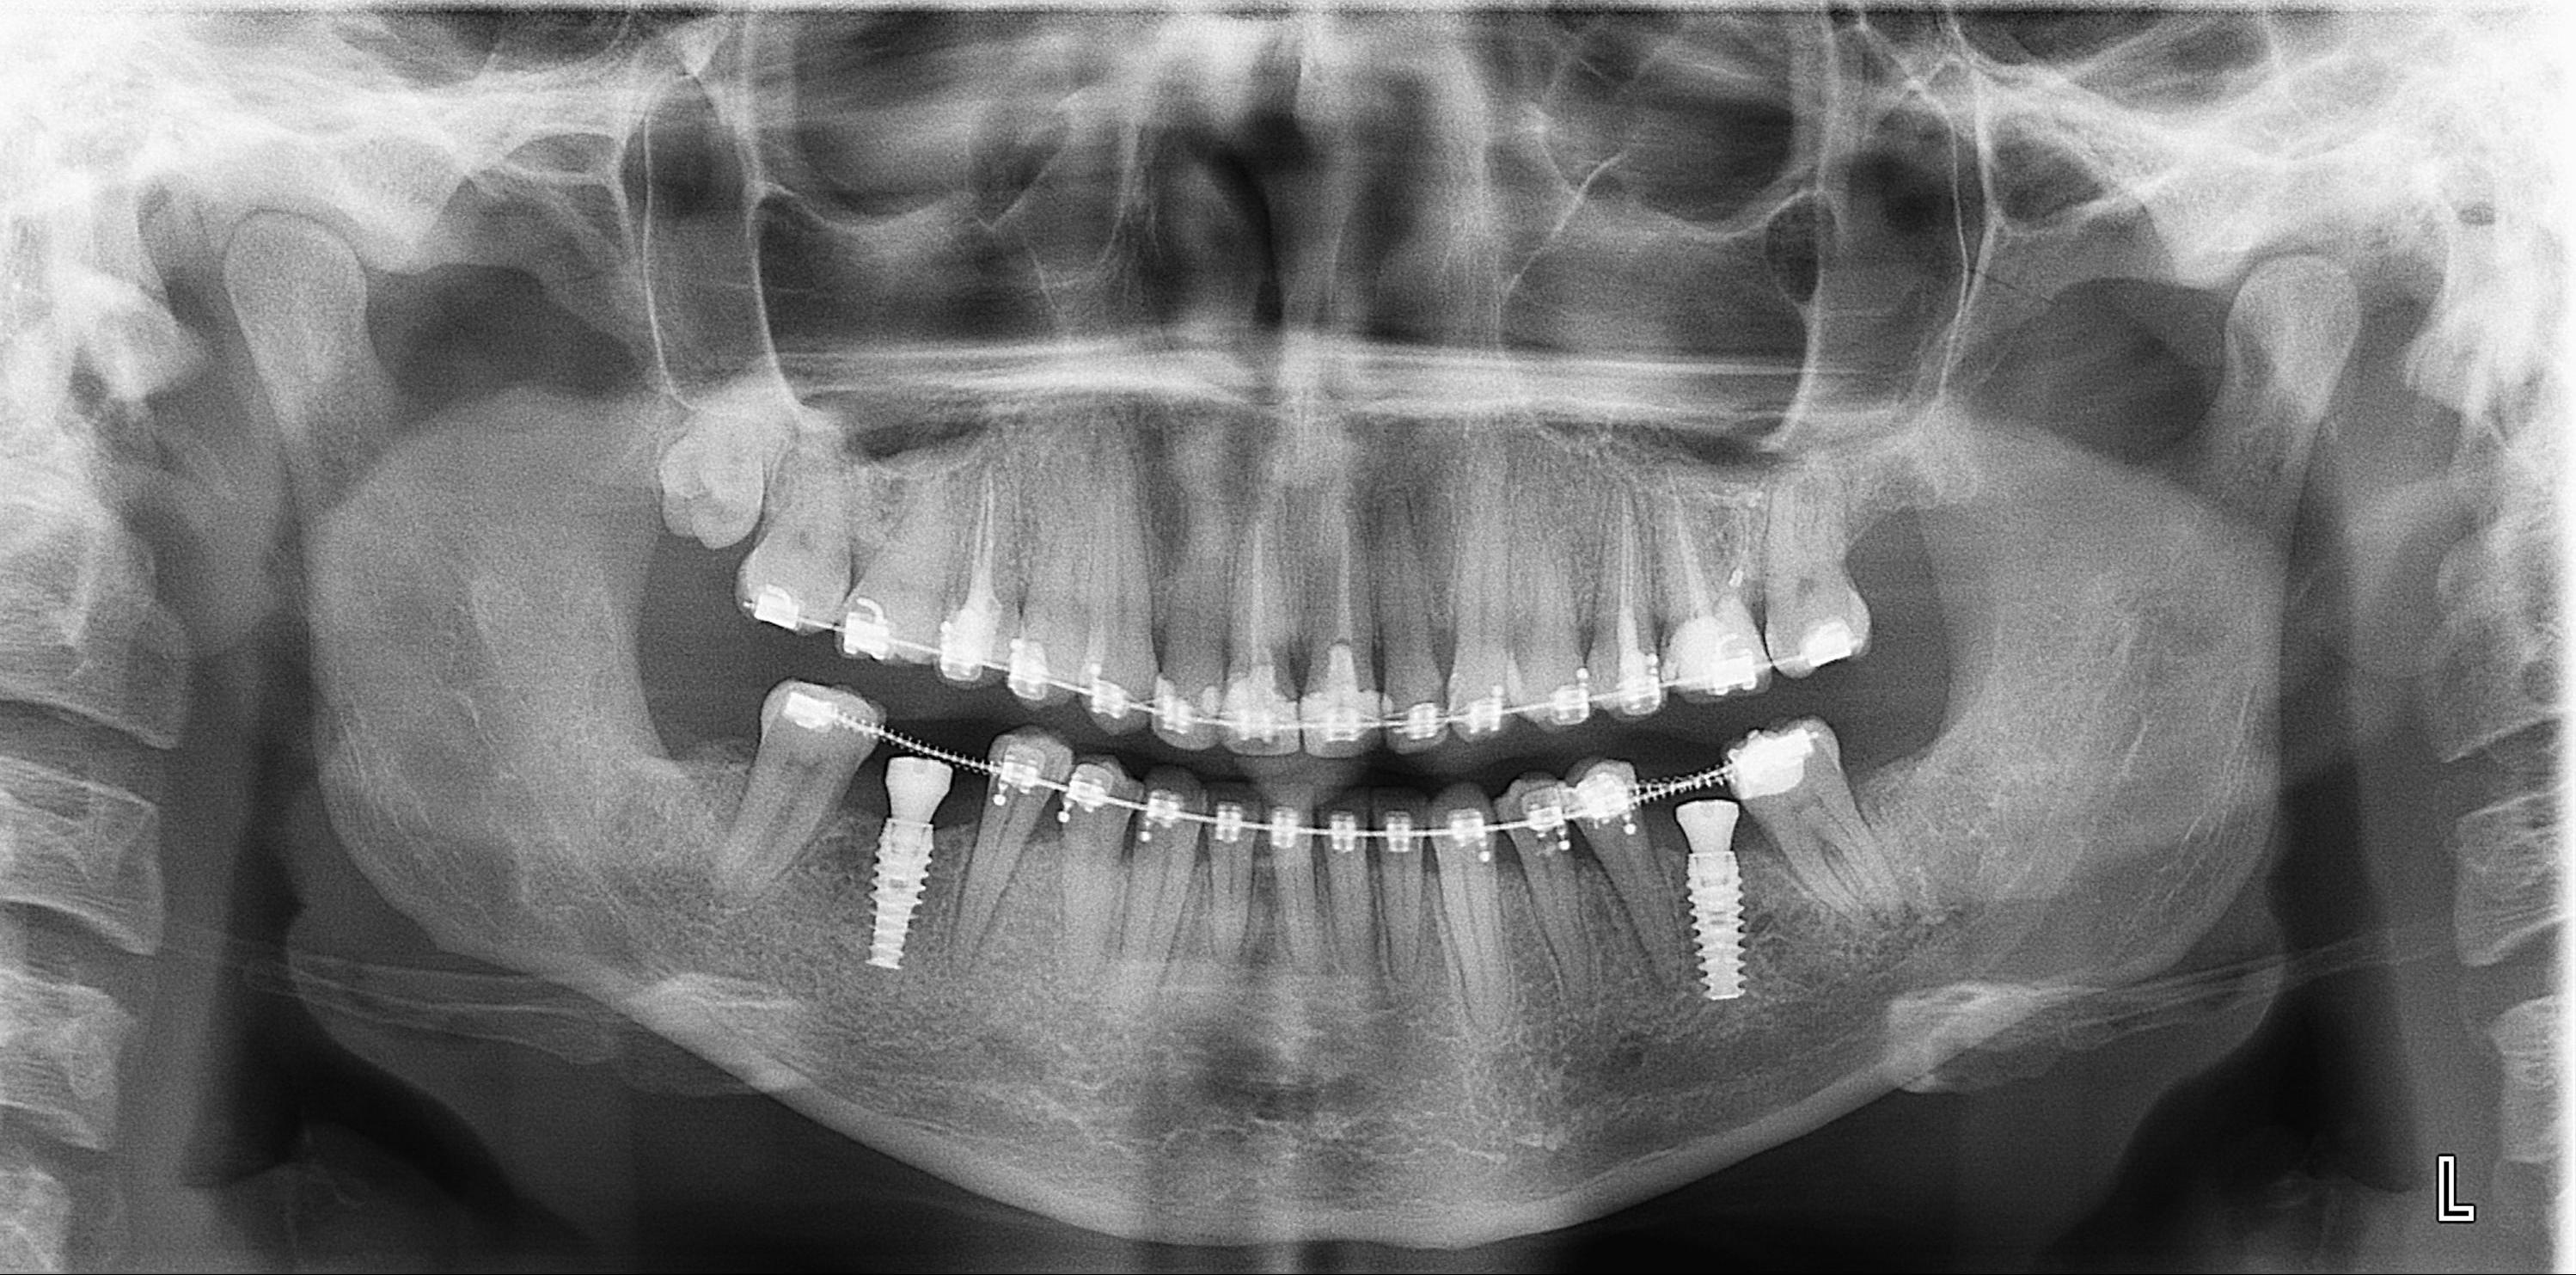 Расшифровка ортопантомограммы (ОПТГ) зубных рядов